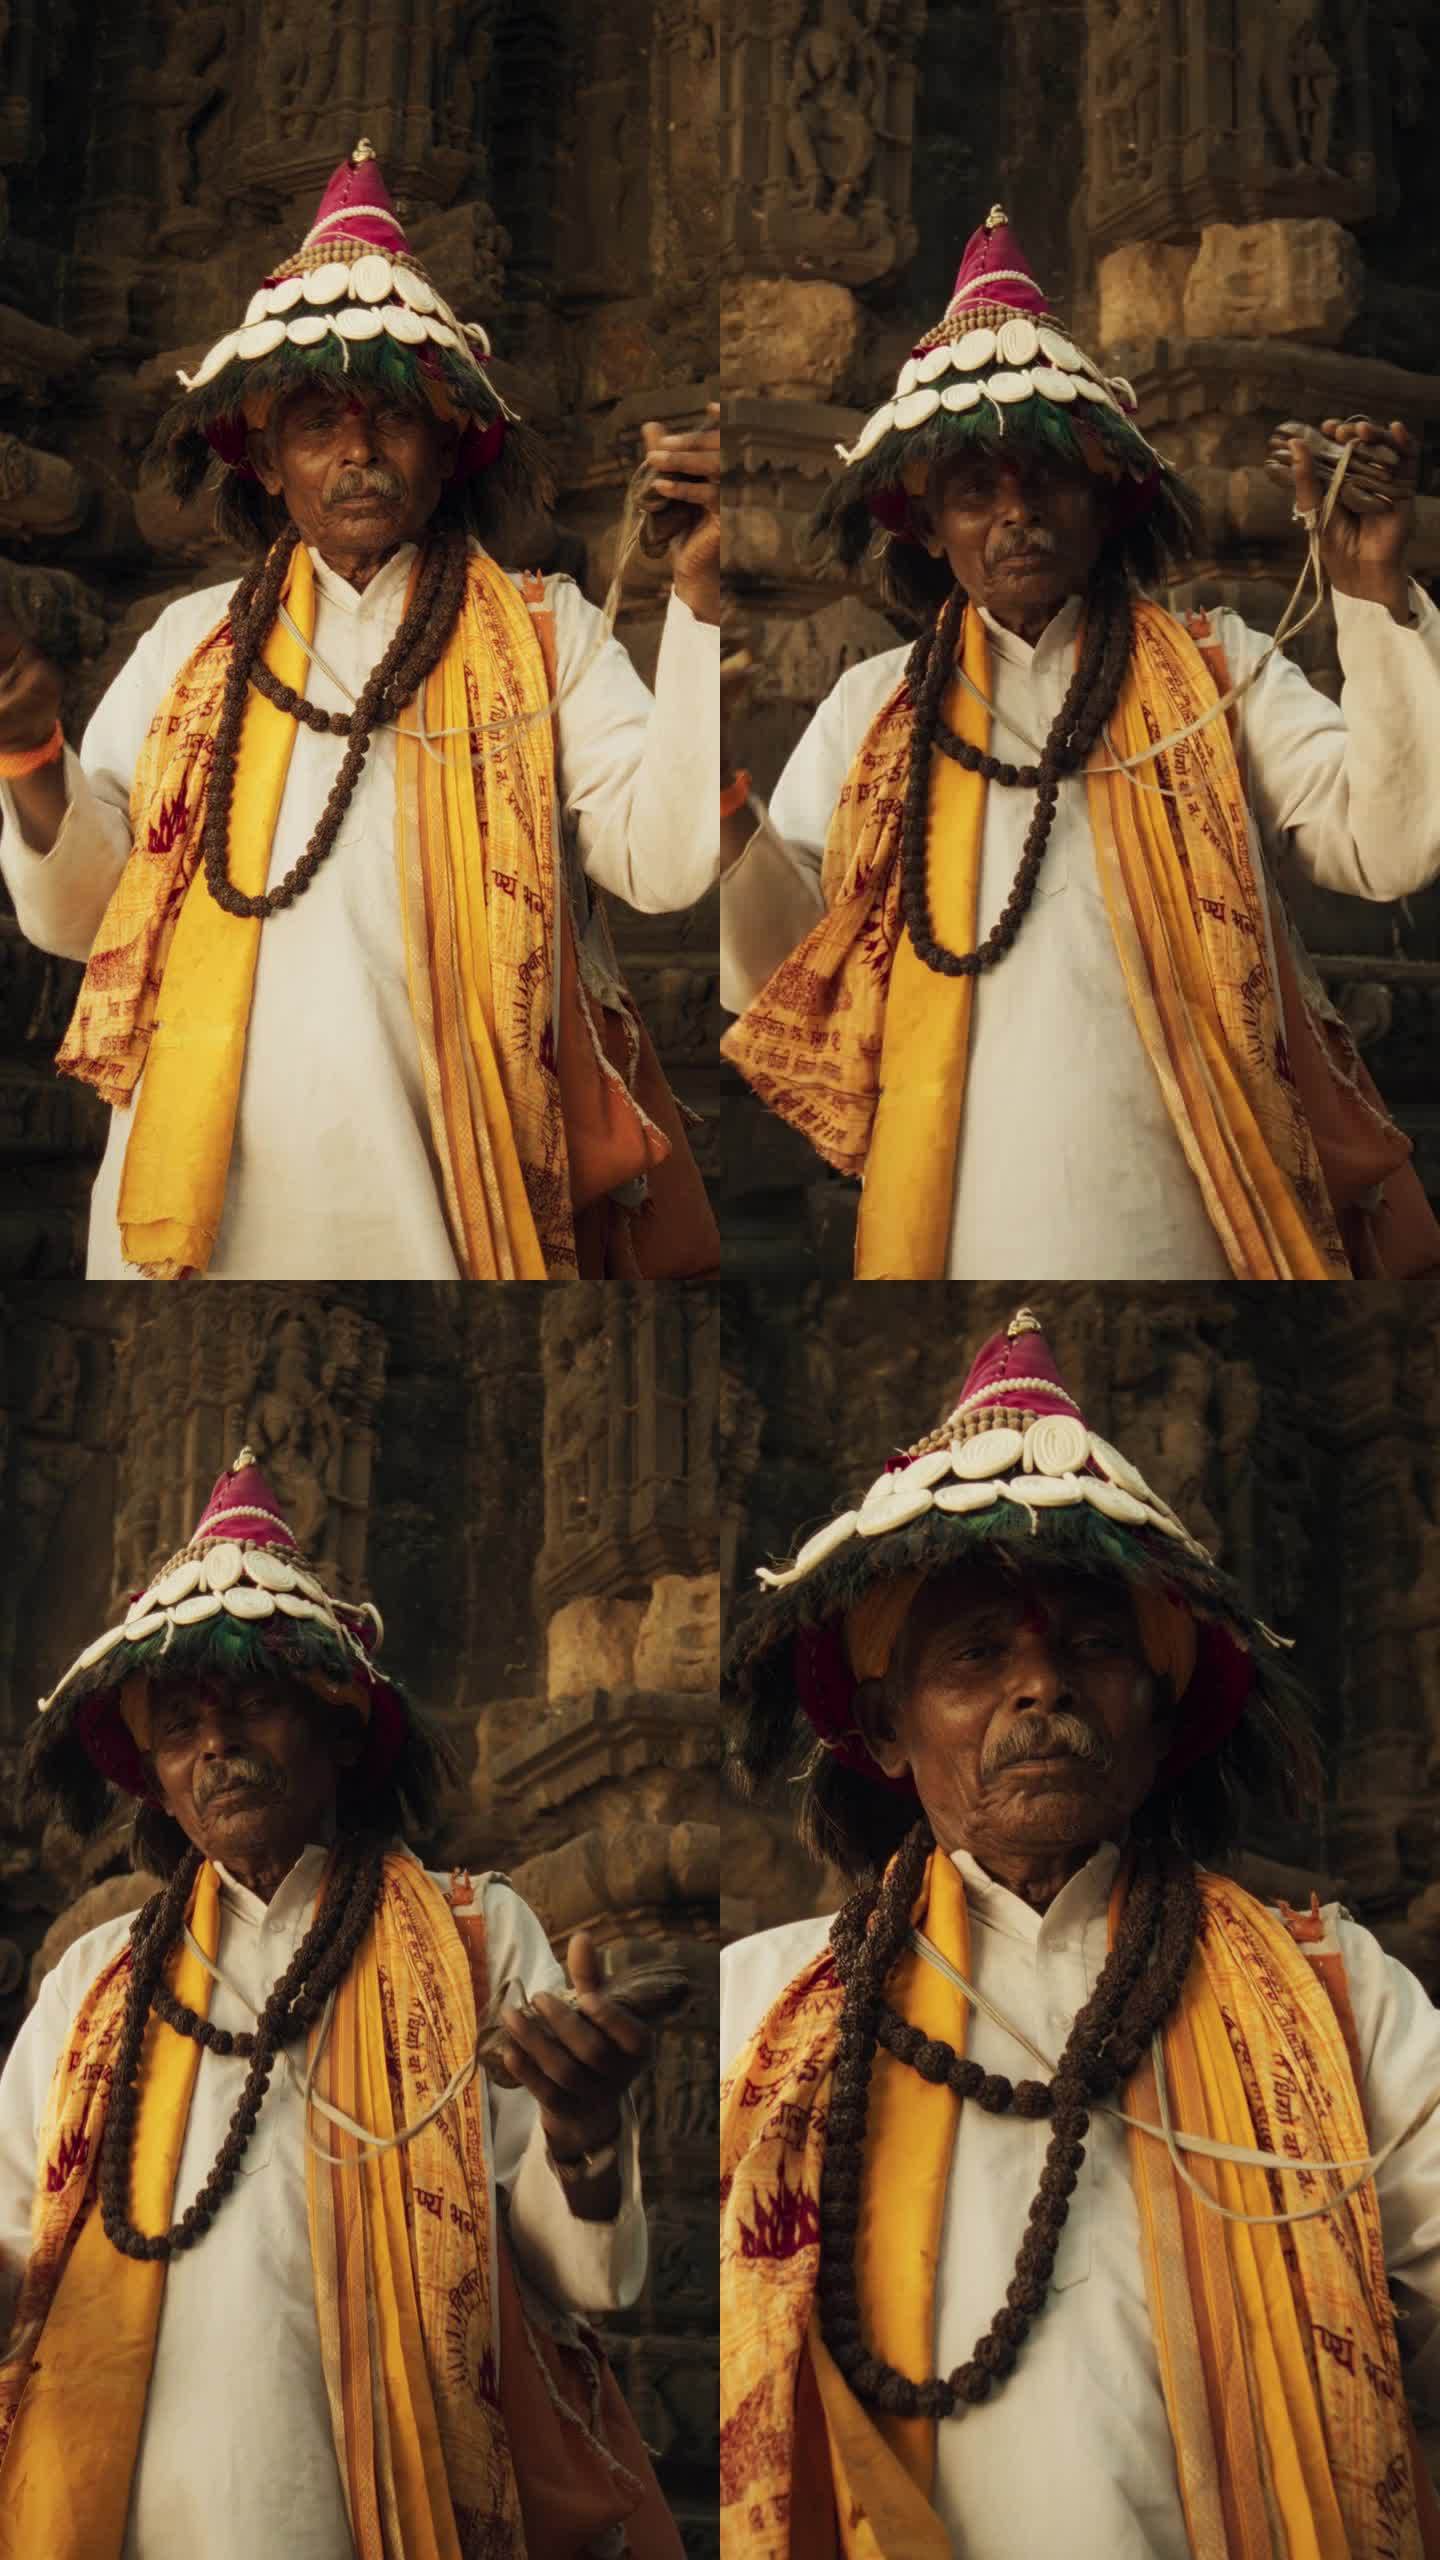 竖屏:一个穿着传统服装的印度老人在古印度寺庙里演奏乐器和诵经的画像。节日老人，传承传统文化遗产